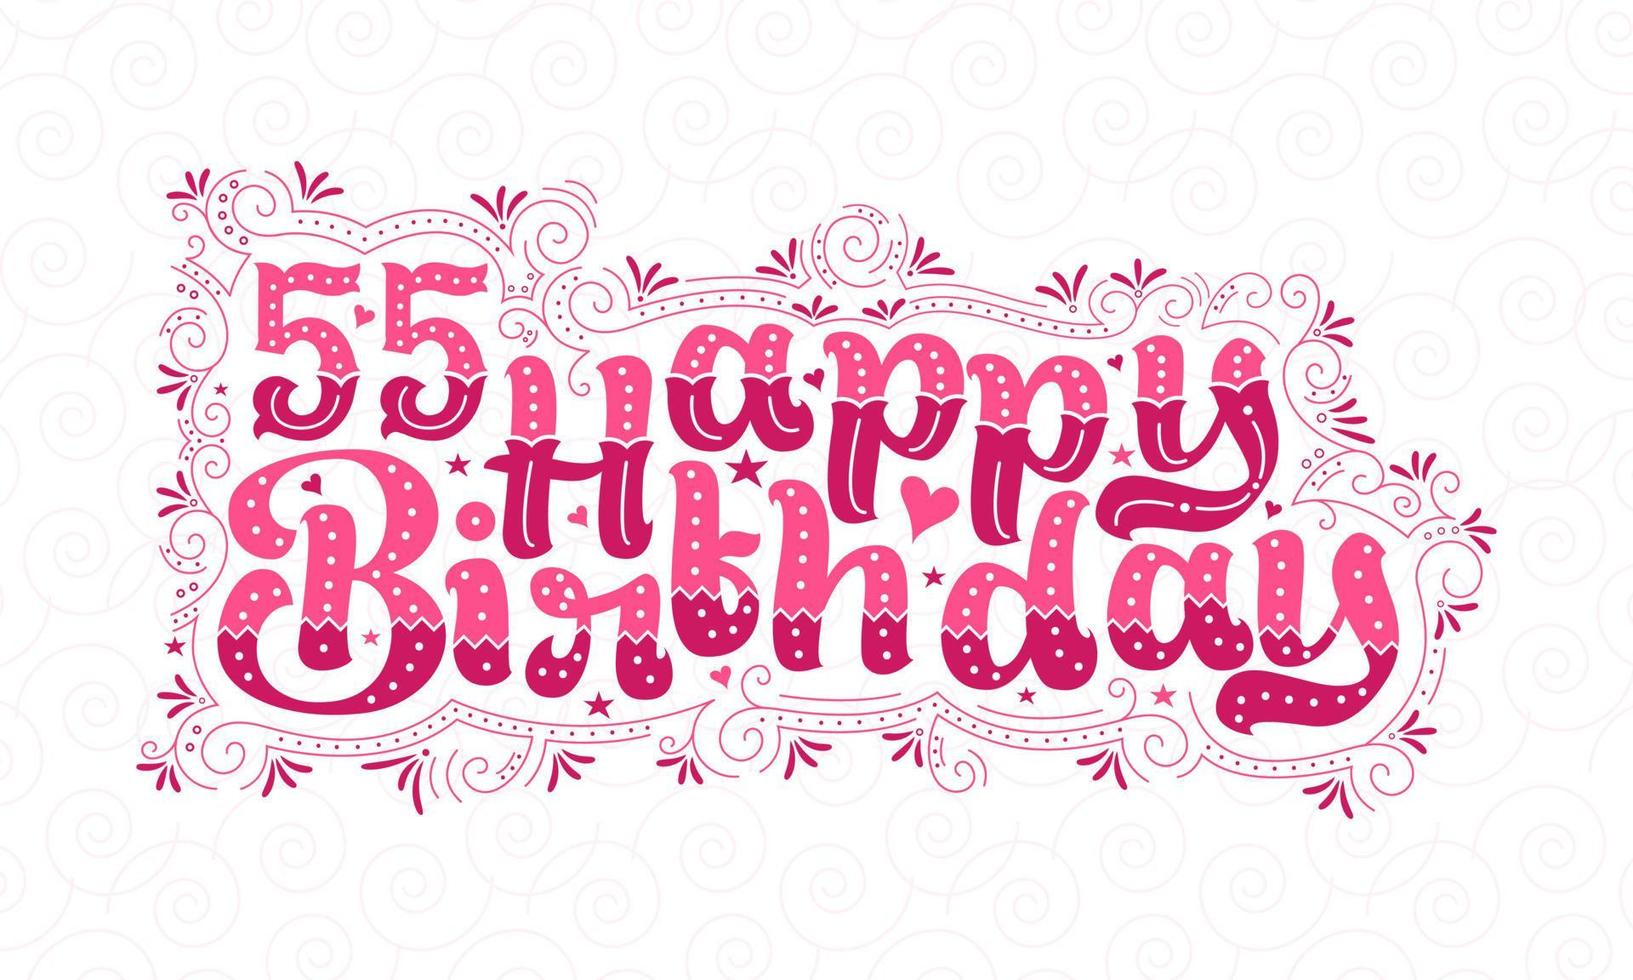 55e gelukkige verjaardag belettering, 55 jaar verjaardag mooi typografieontwerp met roze stippen, lijnen en bladeren. vector